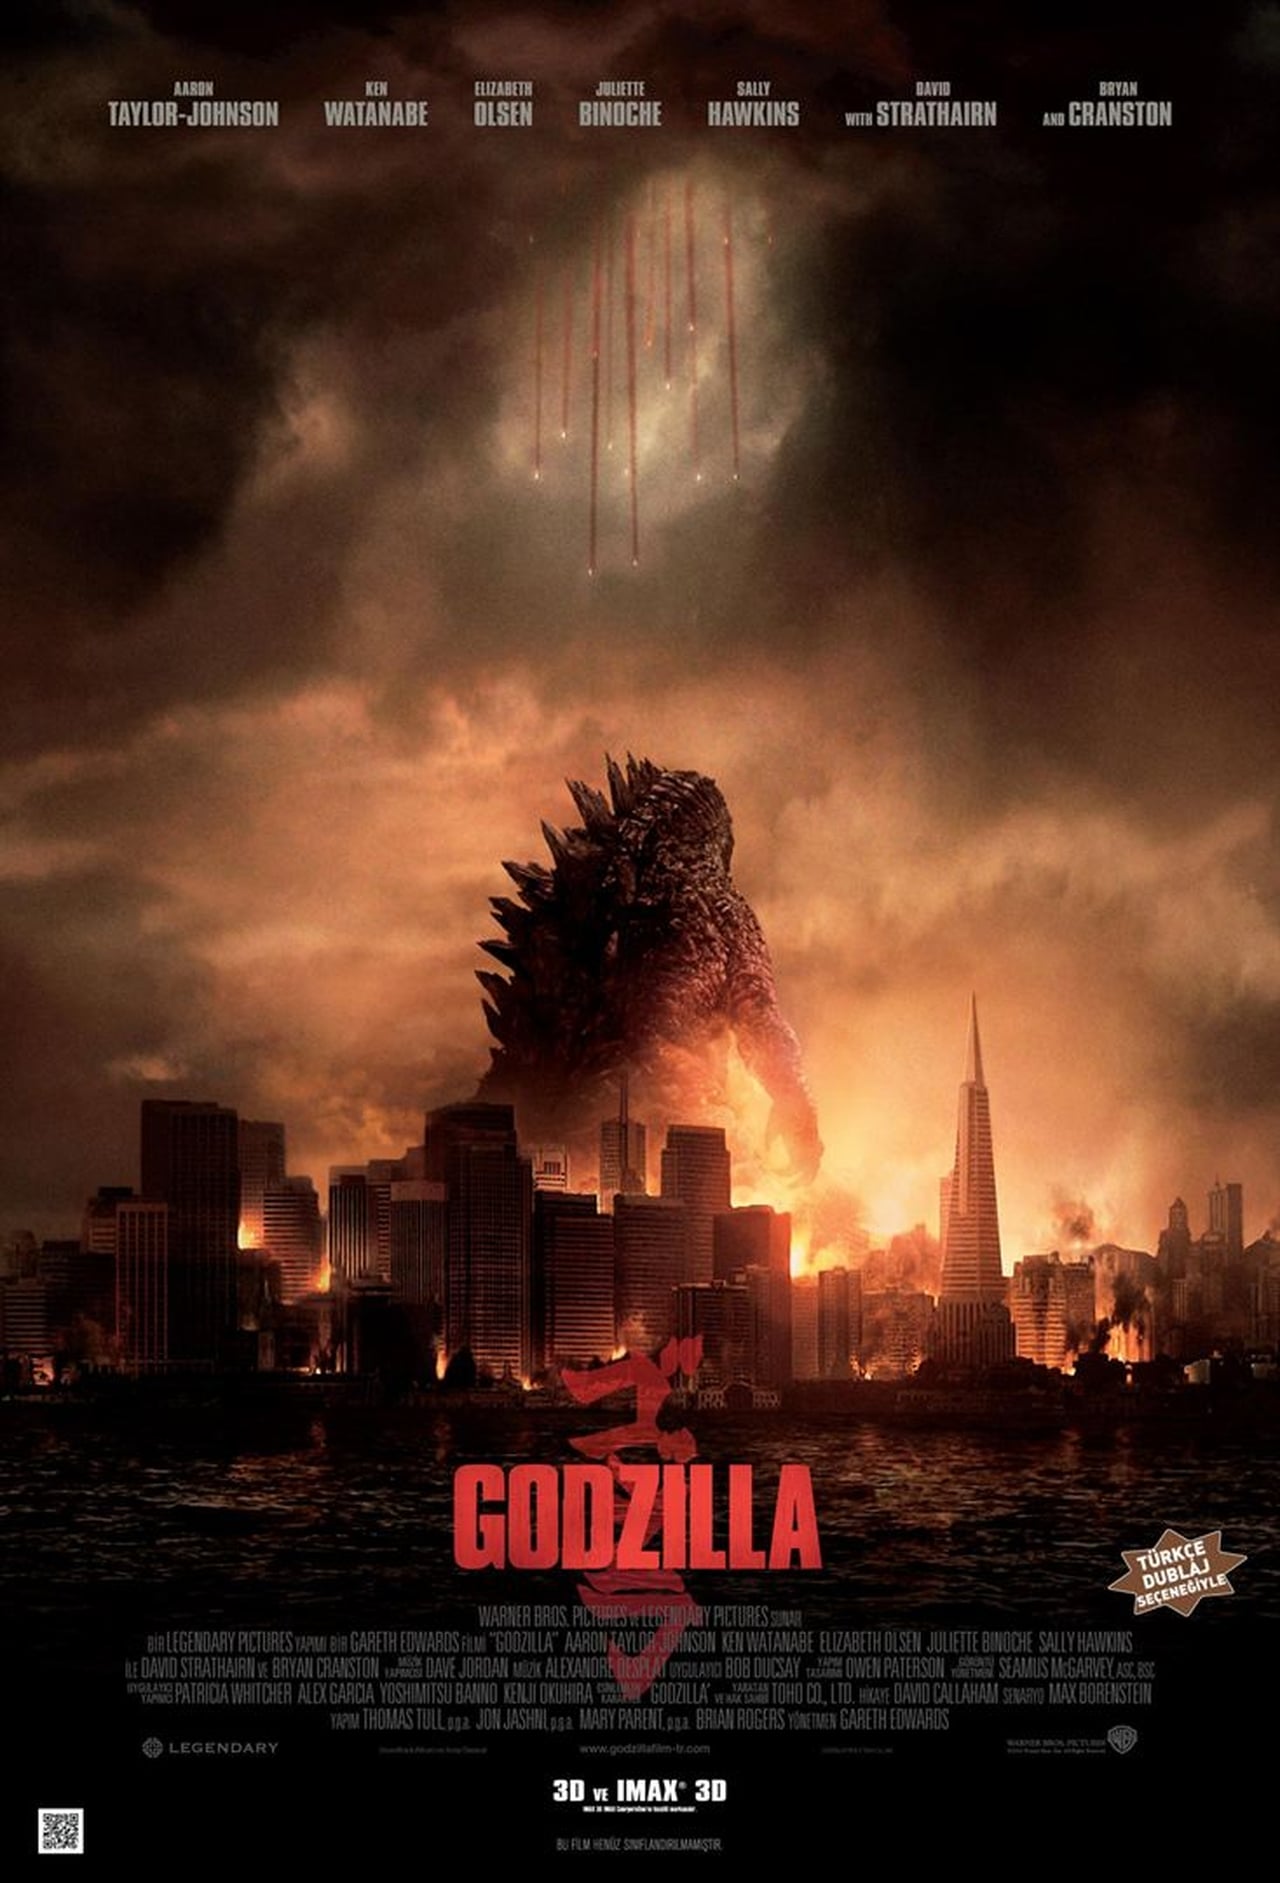 Godzilla (2014) 448Kbps 23.976Fps 48Khz 5.1Ch BluRay Turkish Audio TAC